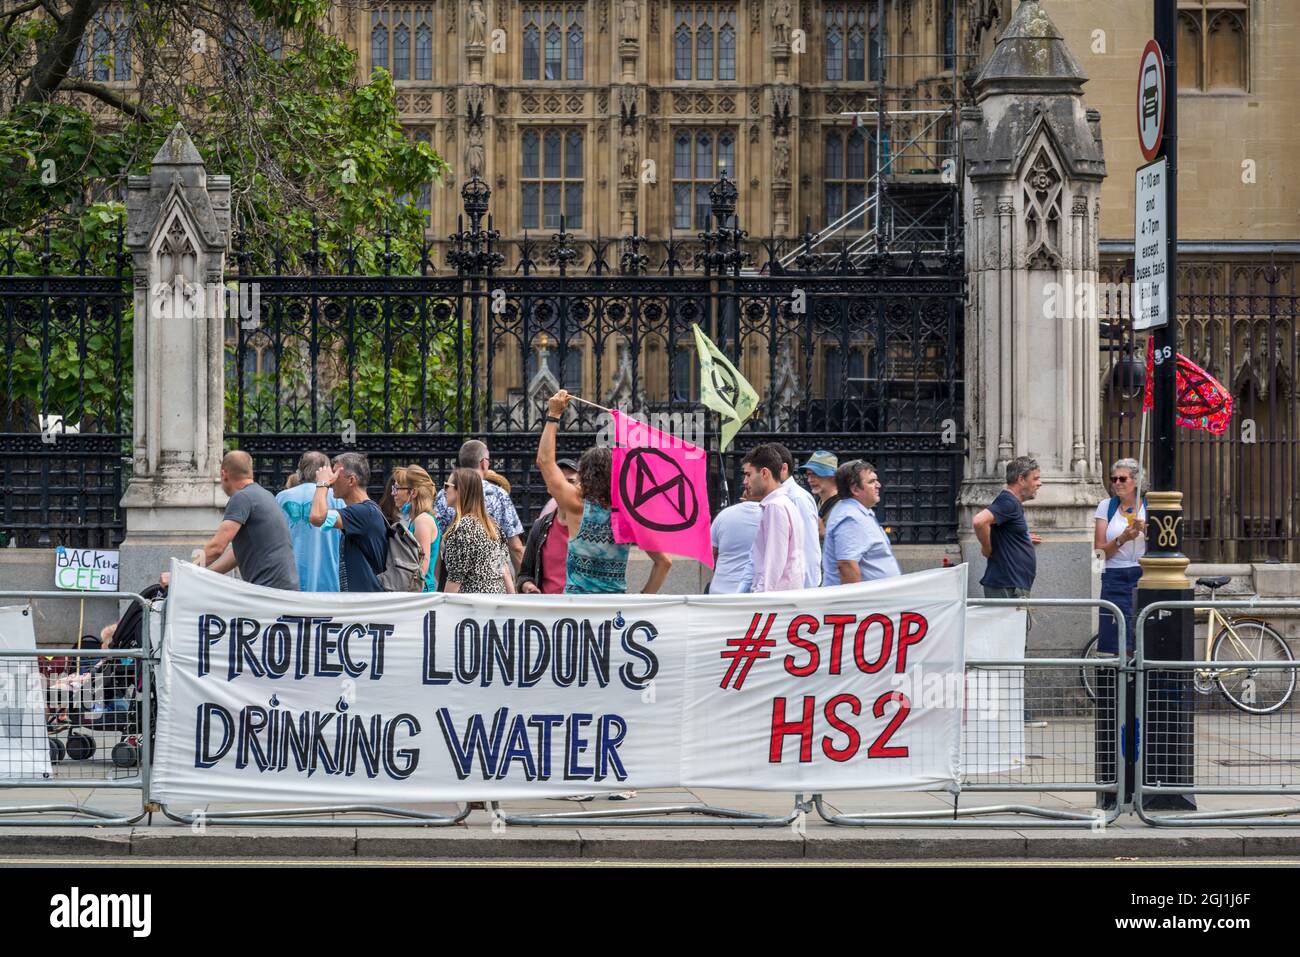 Bannière Stop HS2 par extinction rébellion devant les chambres du Parlement, Parliament Square, Londres, Angleterre, Royaume-Uni Banque D'Images